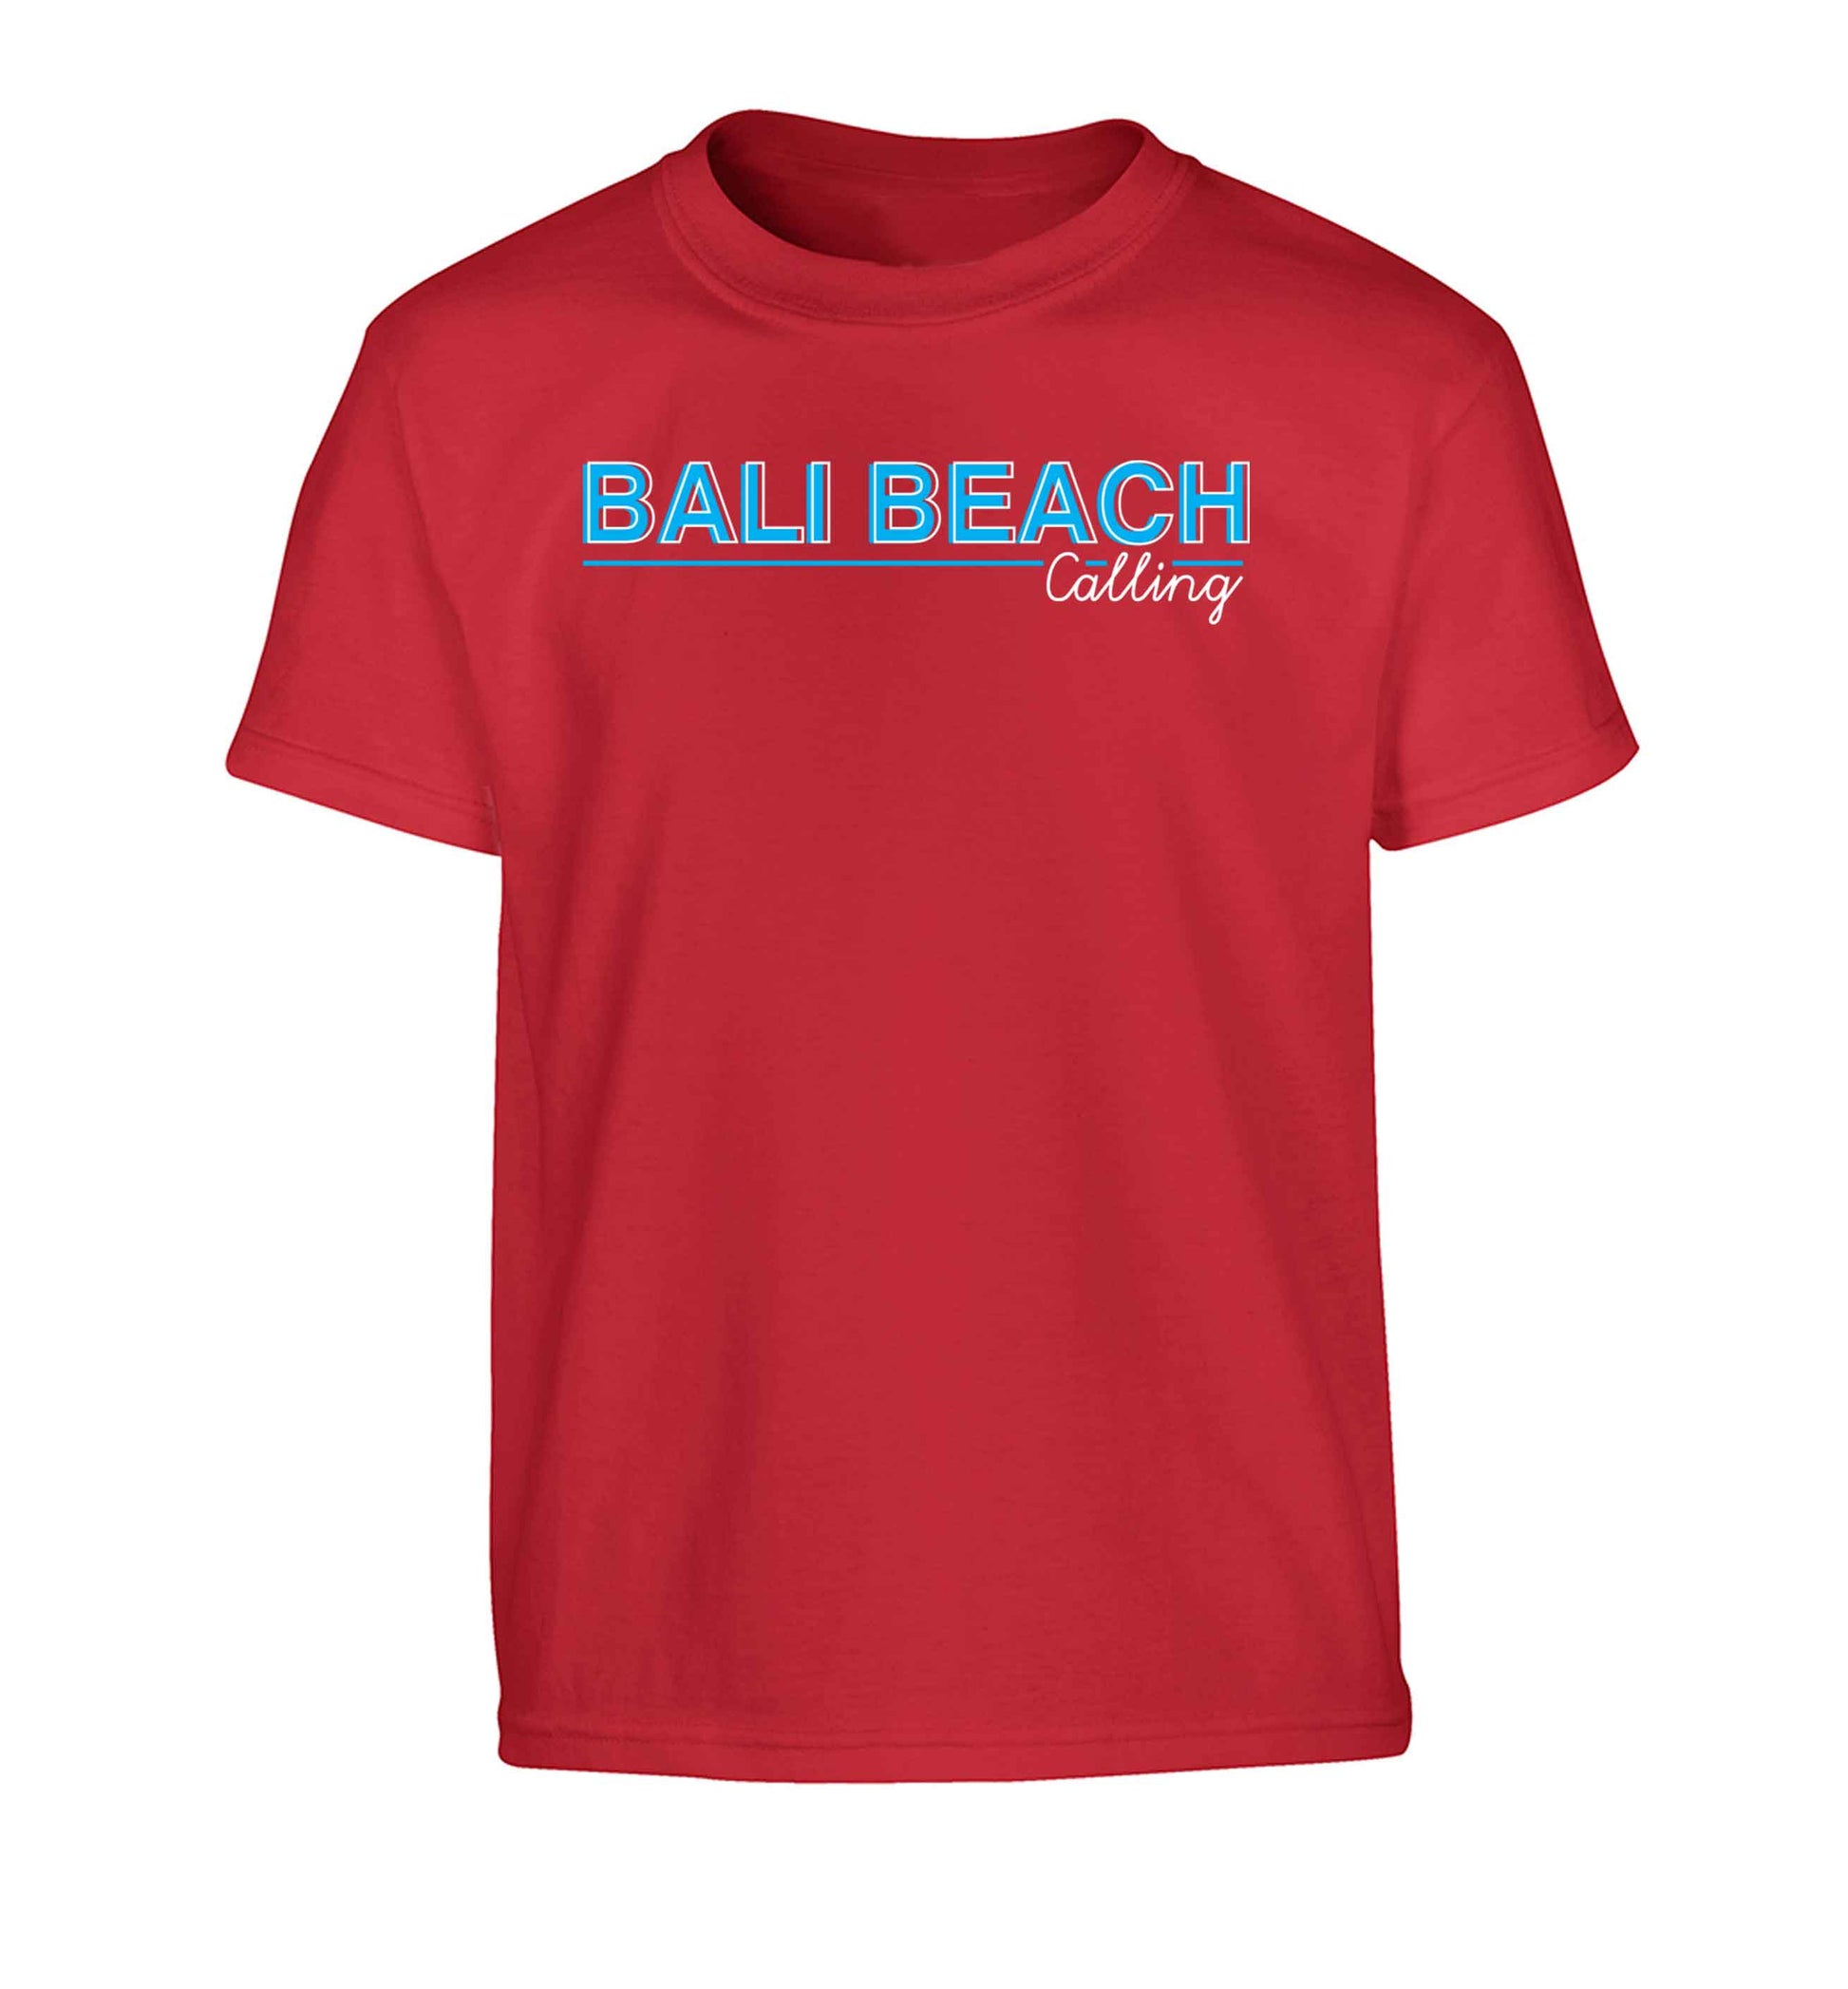 Bali beach calling Children's red Tshirt 12-13 Years